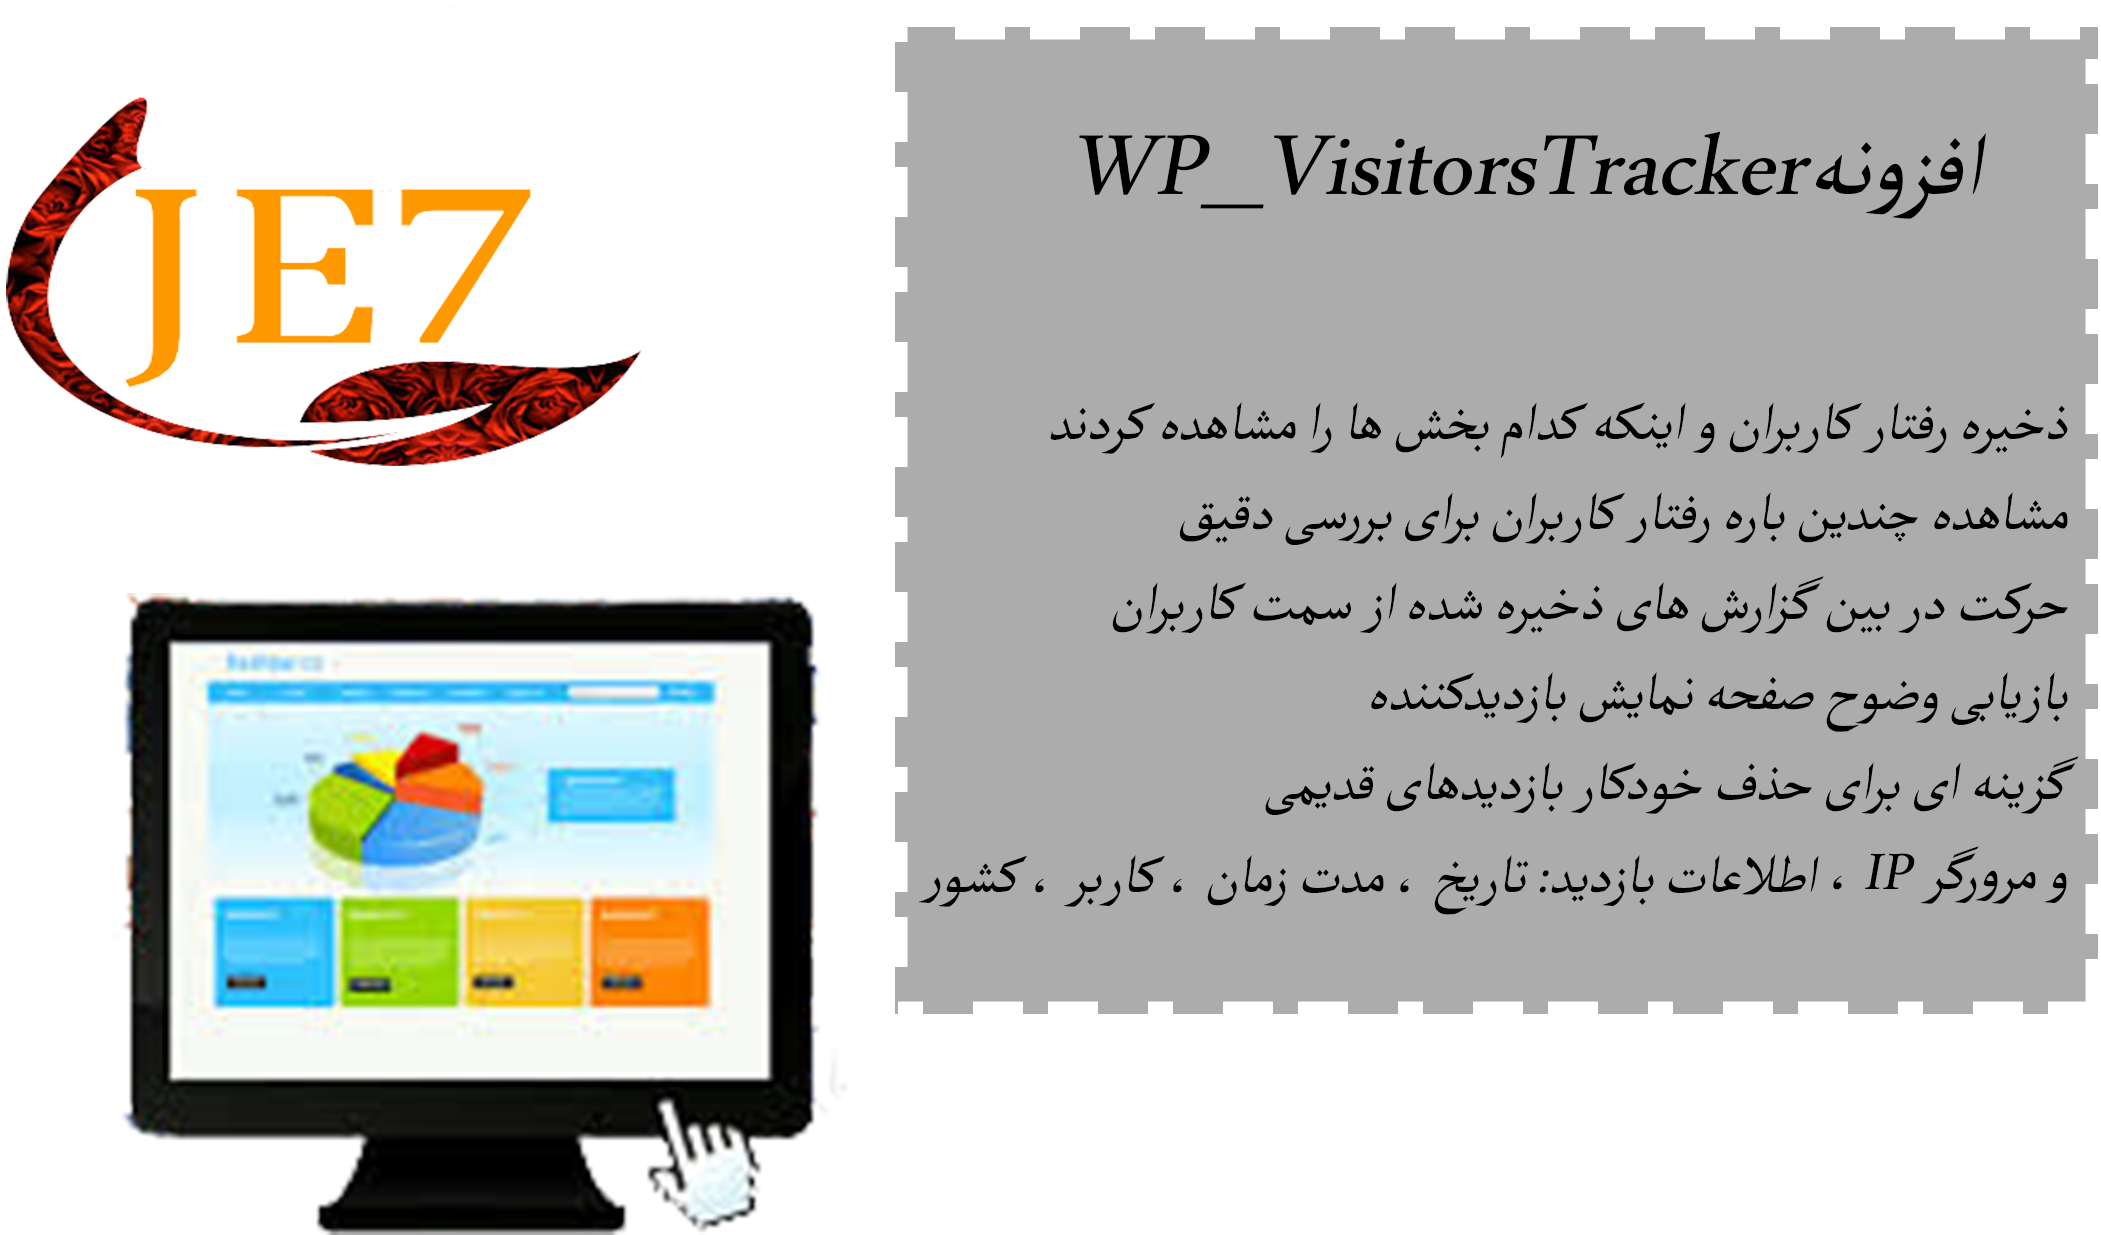 افزونه بررسی رفتار کاربران | WP Visitors Tracker